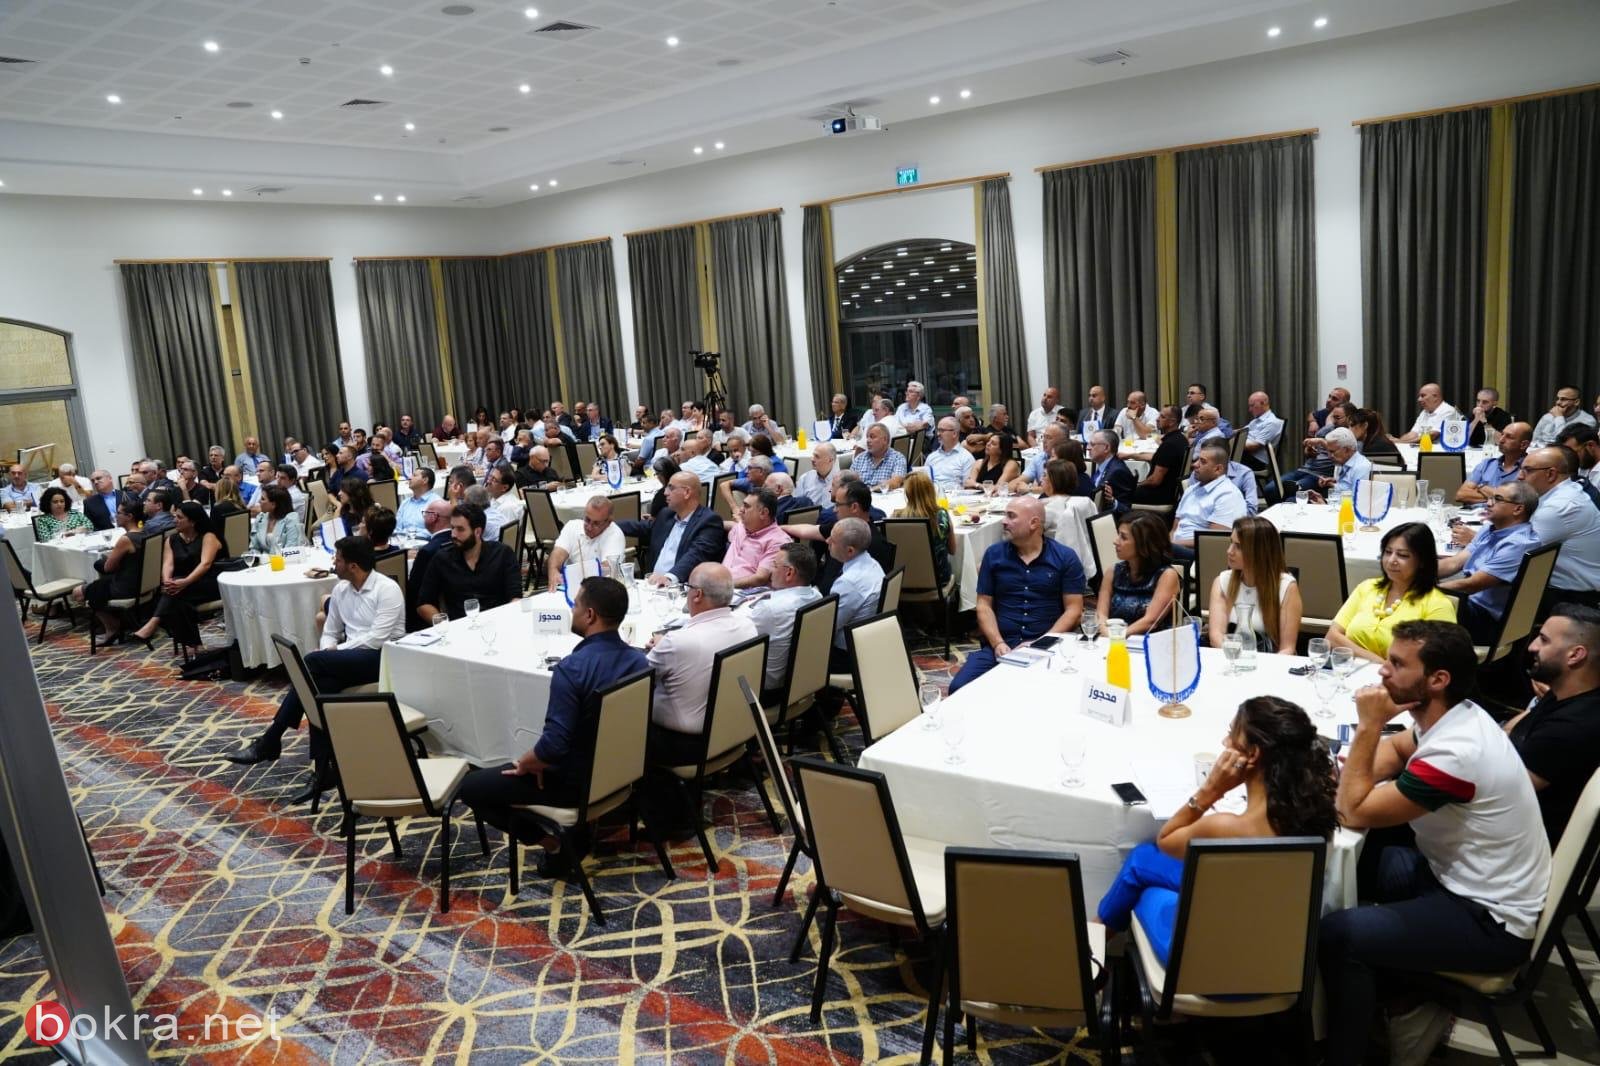 روتاري الناصرة يعقد مؤتمره الاقتصادي الأول لدعم أصحاب المصالح المتوسطة-6